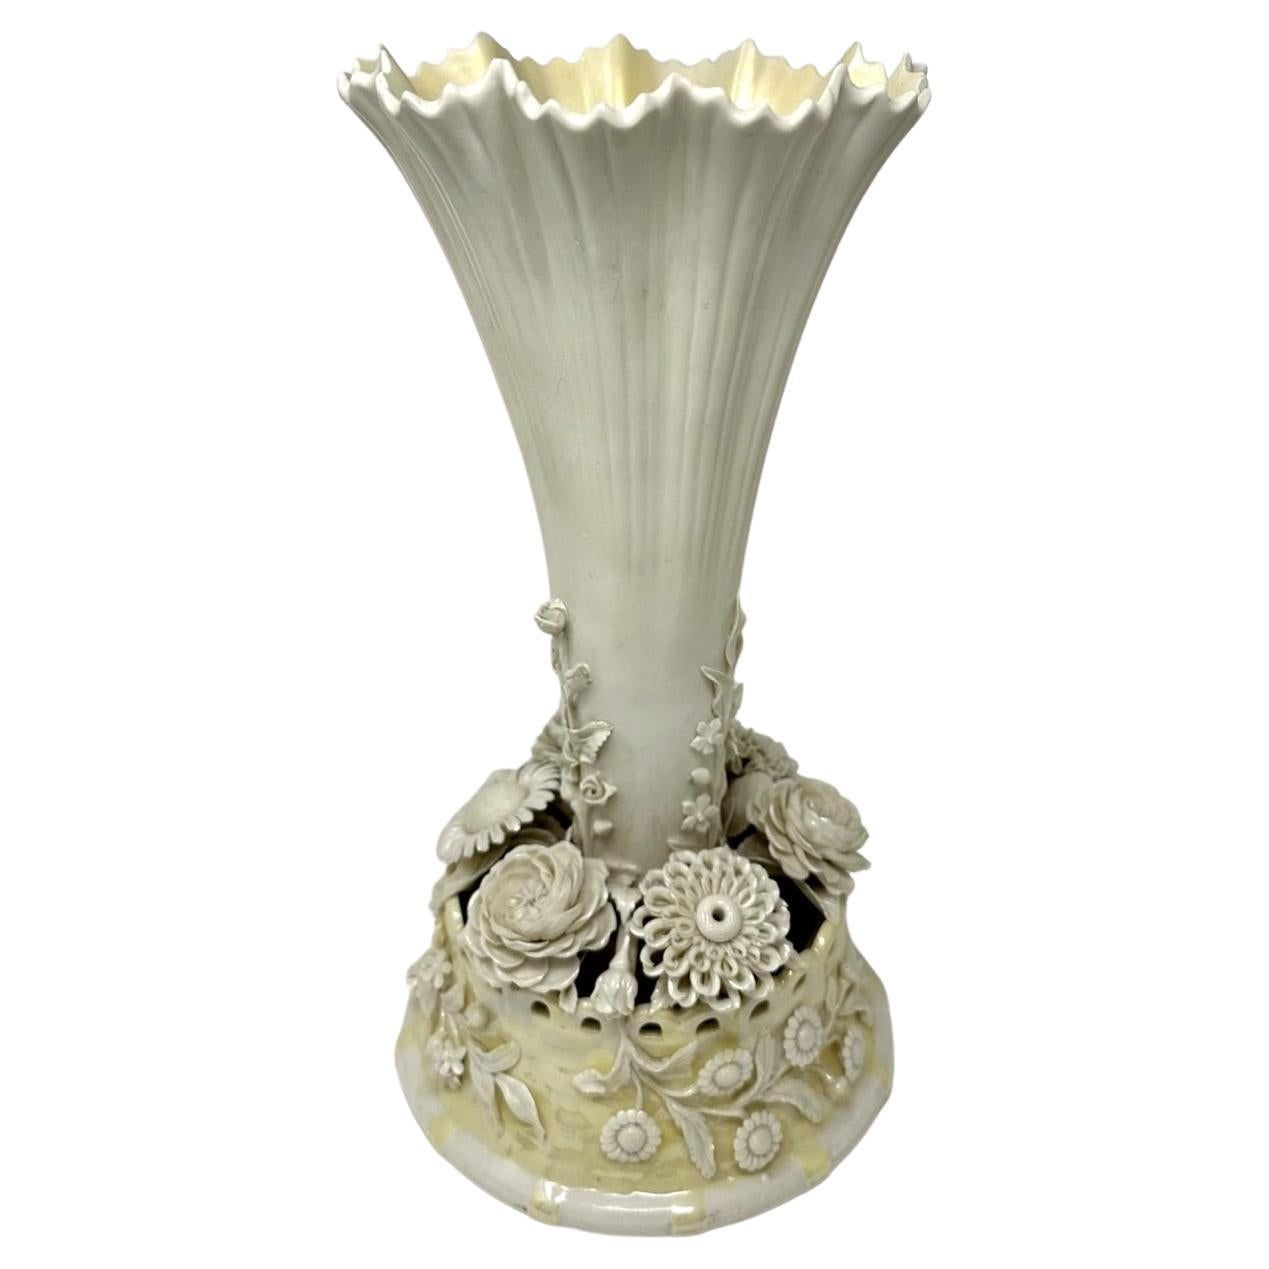 Antique Irish Belleek Porcelain Trumpet Centerpiece Vase Urn 1926-1946 Ireland